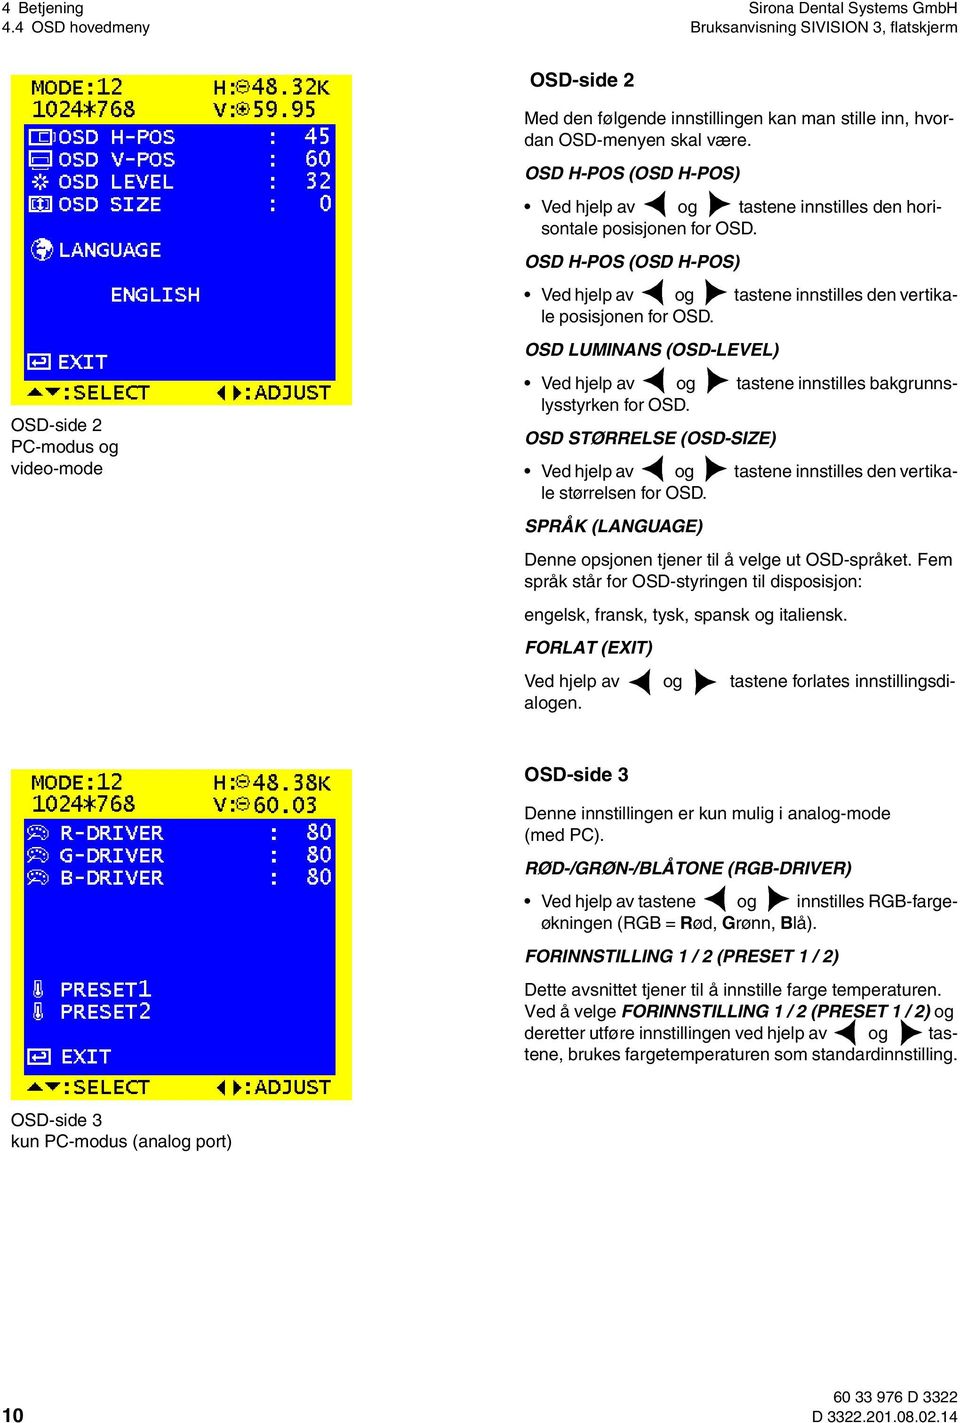 OSD LUMINANS (OSD-LEVEL) OSD-side 2 PC-modus og video-mode Ved hjelp av og tastene innstilles bakgrunnslysstyrken for OSD.